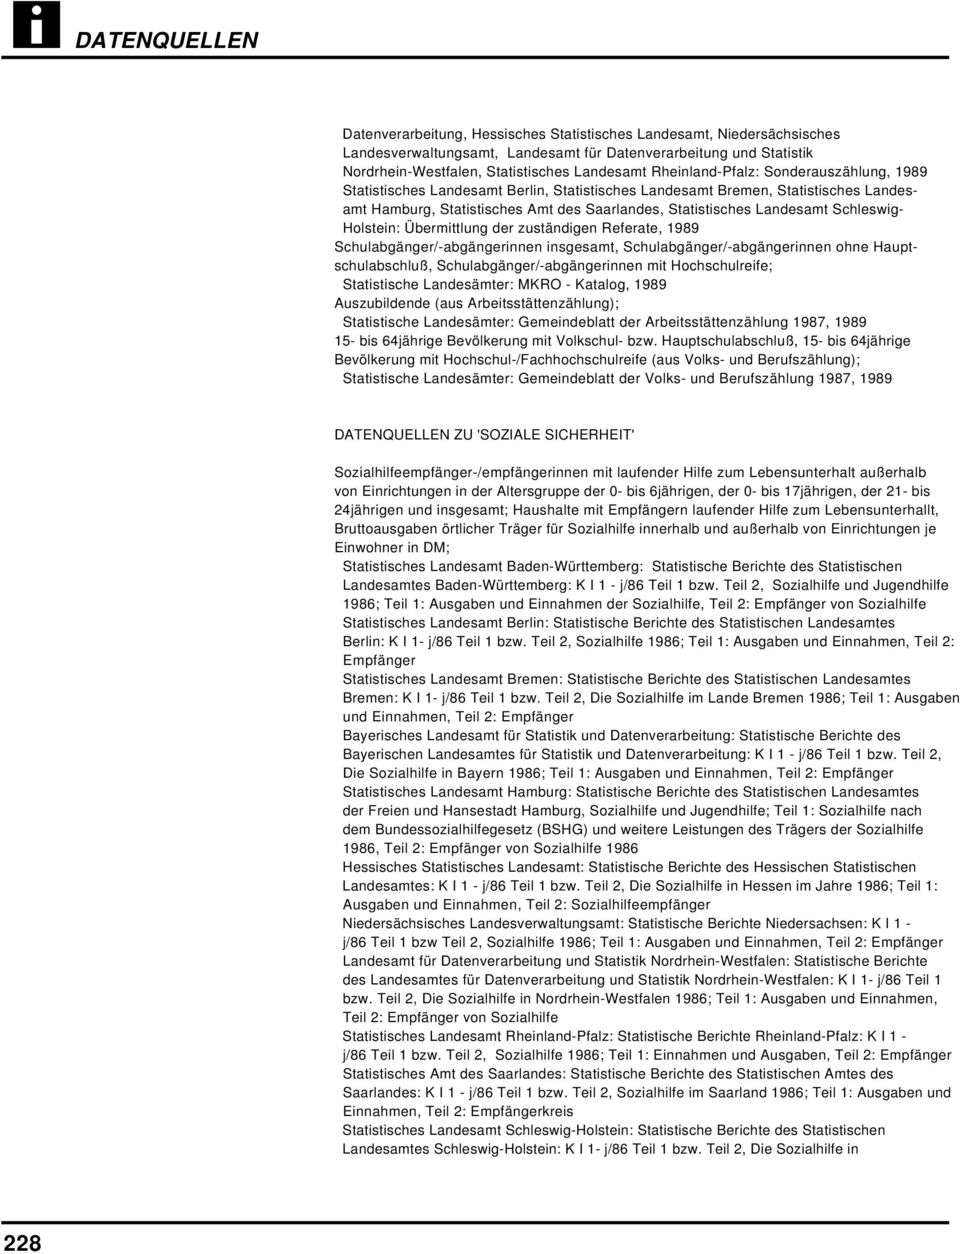 Schleswig- Holstein: Übermittlung der zuständigen Referate, 1989 Schulabgänger/-abgängerinnen insgesamt, Schulabgänger/-abgängerinnen ohne Hauptschulabschluß, Schulabgänger/-abgängerinnen mit